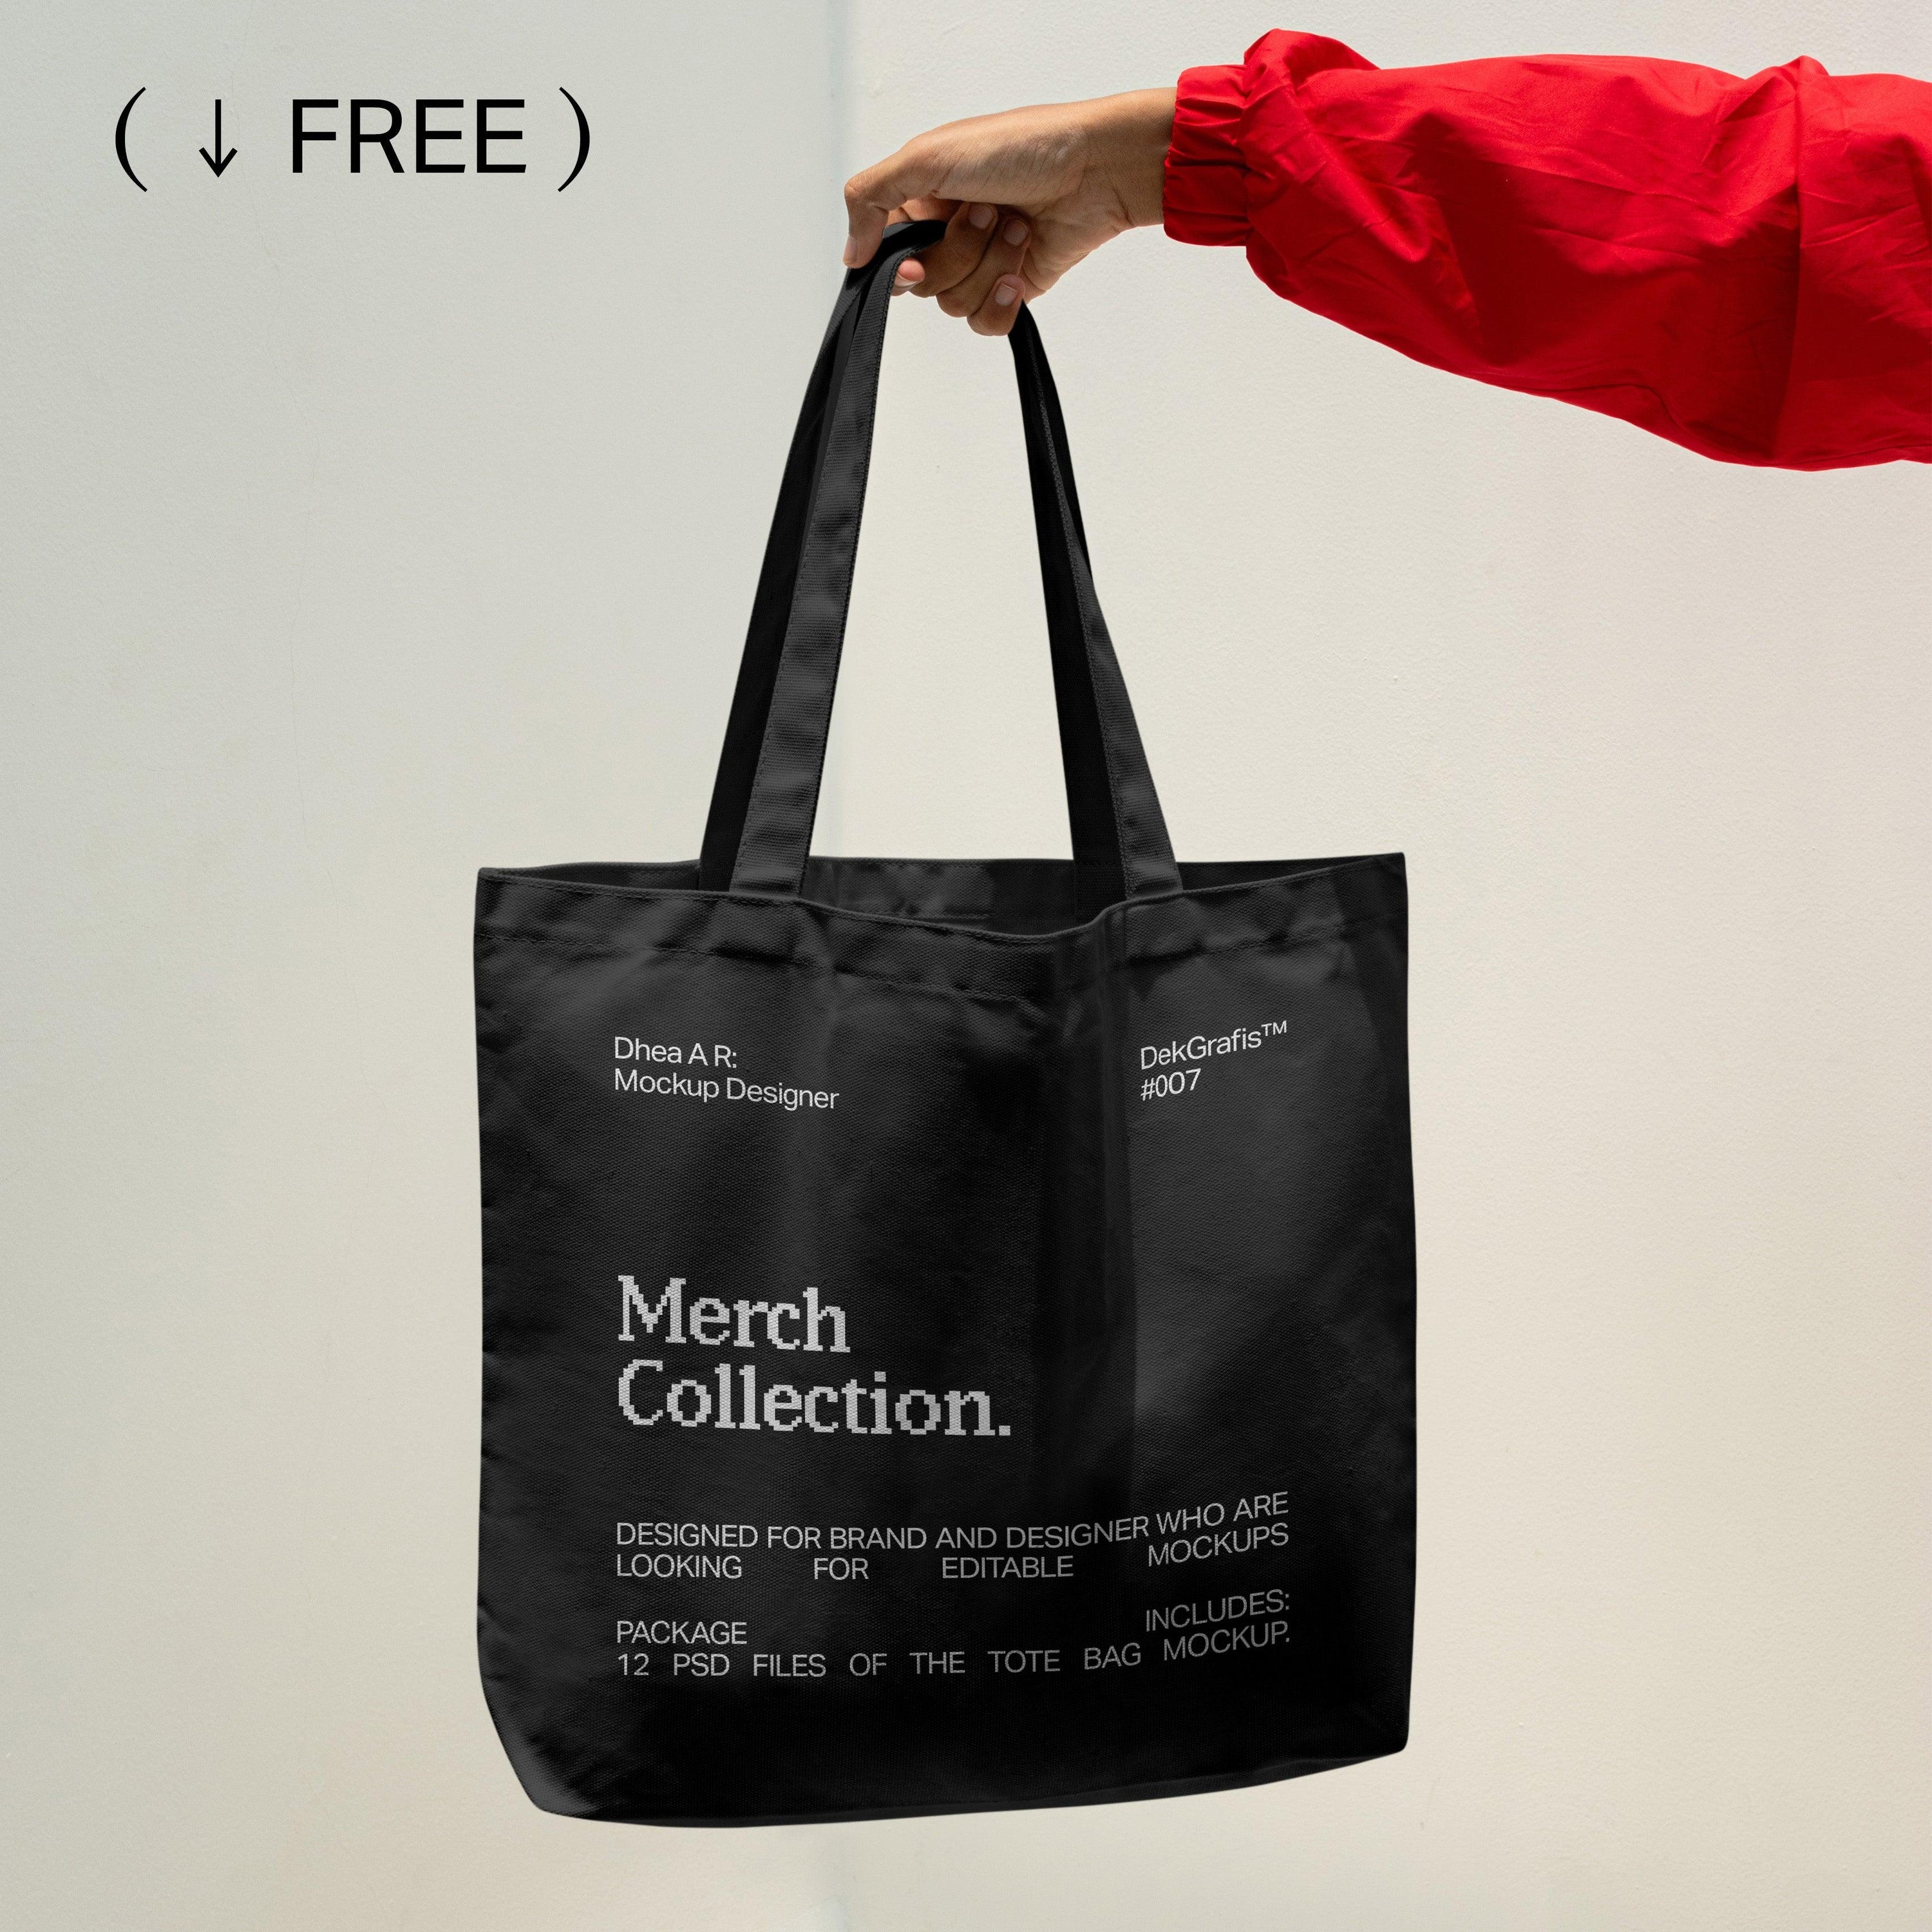 Free Premium Tote Bag Mockup